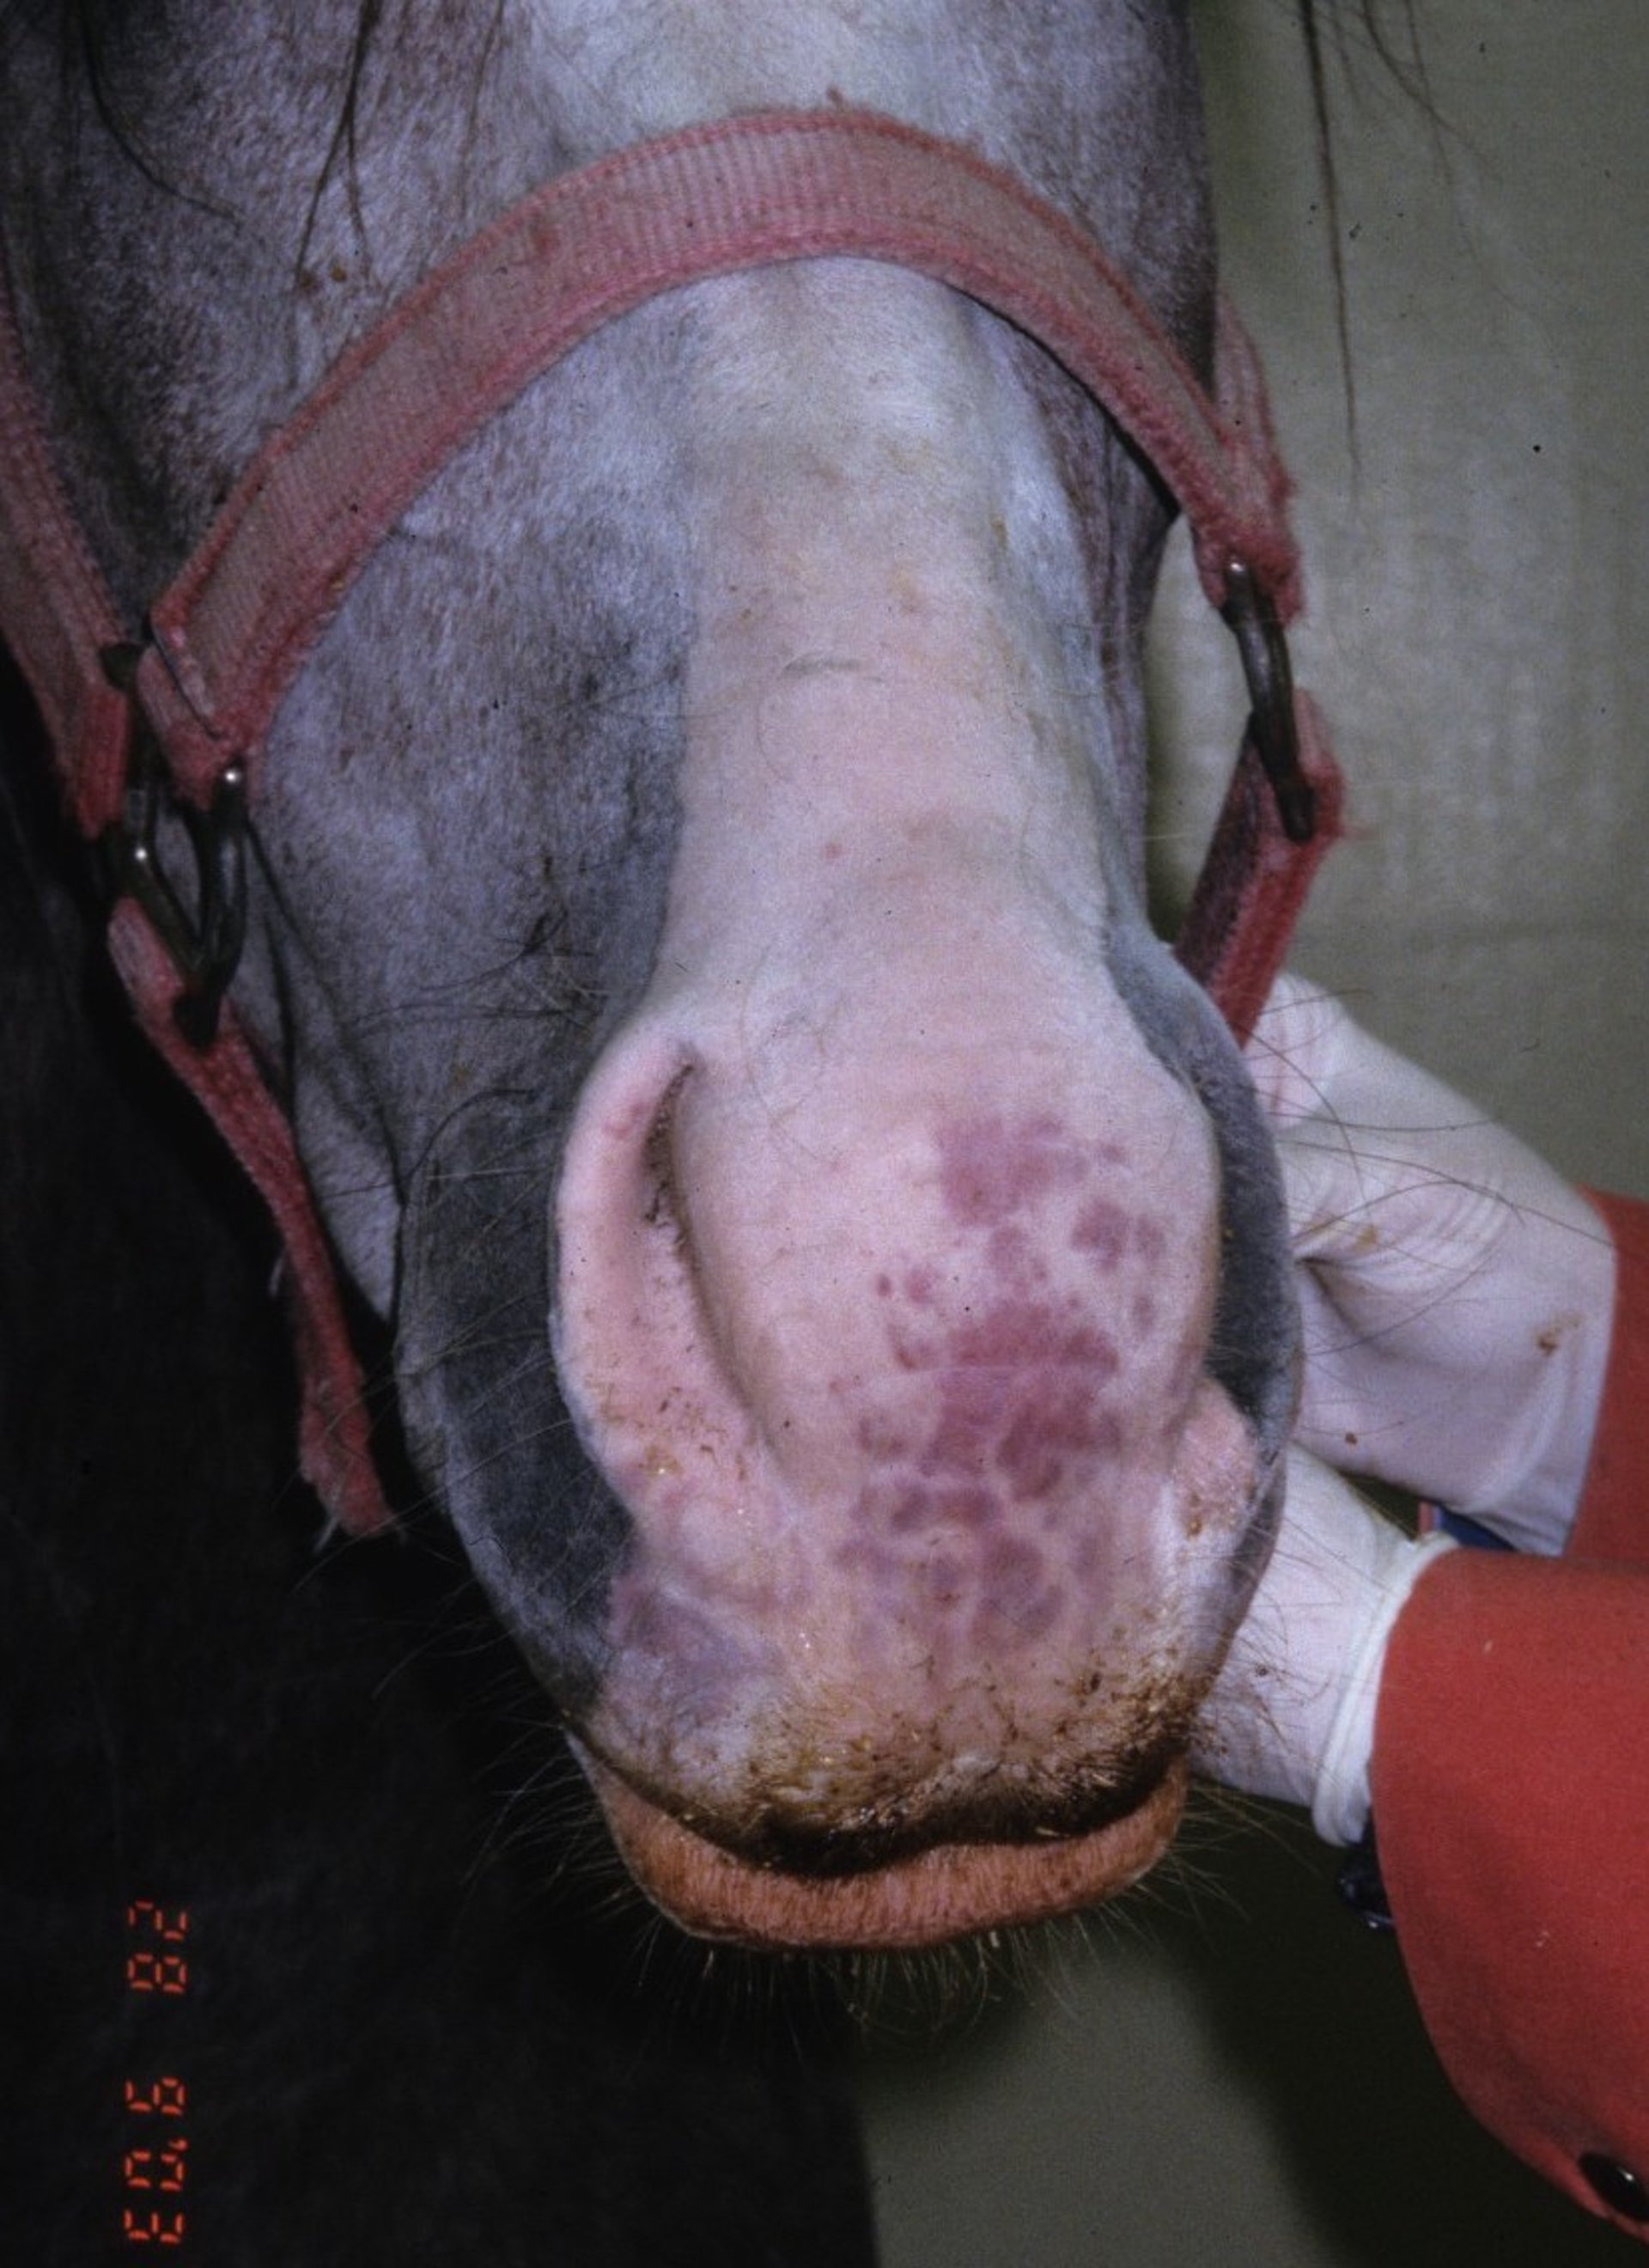 Purpura hemorrhagica, muzzle, horse